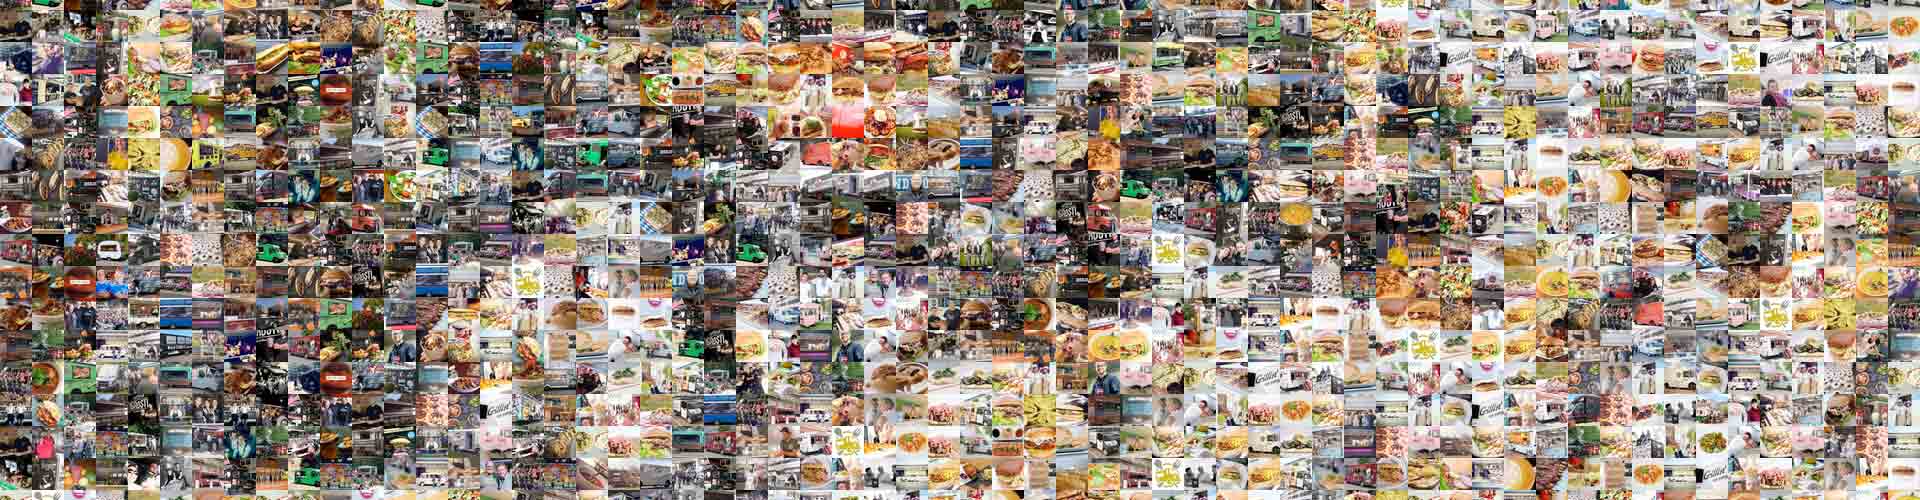 Catering-Szene dargestellt mit einer Collage aus vielen Foodtruck-Impressionen